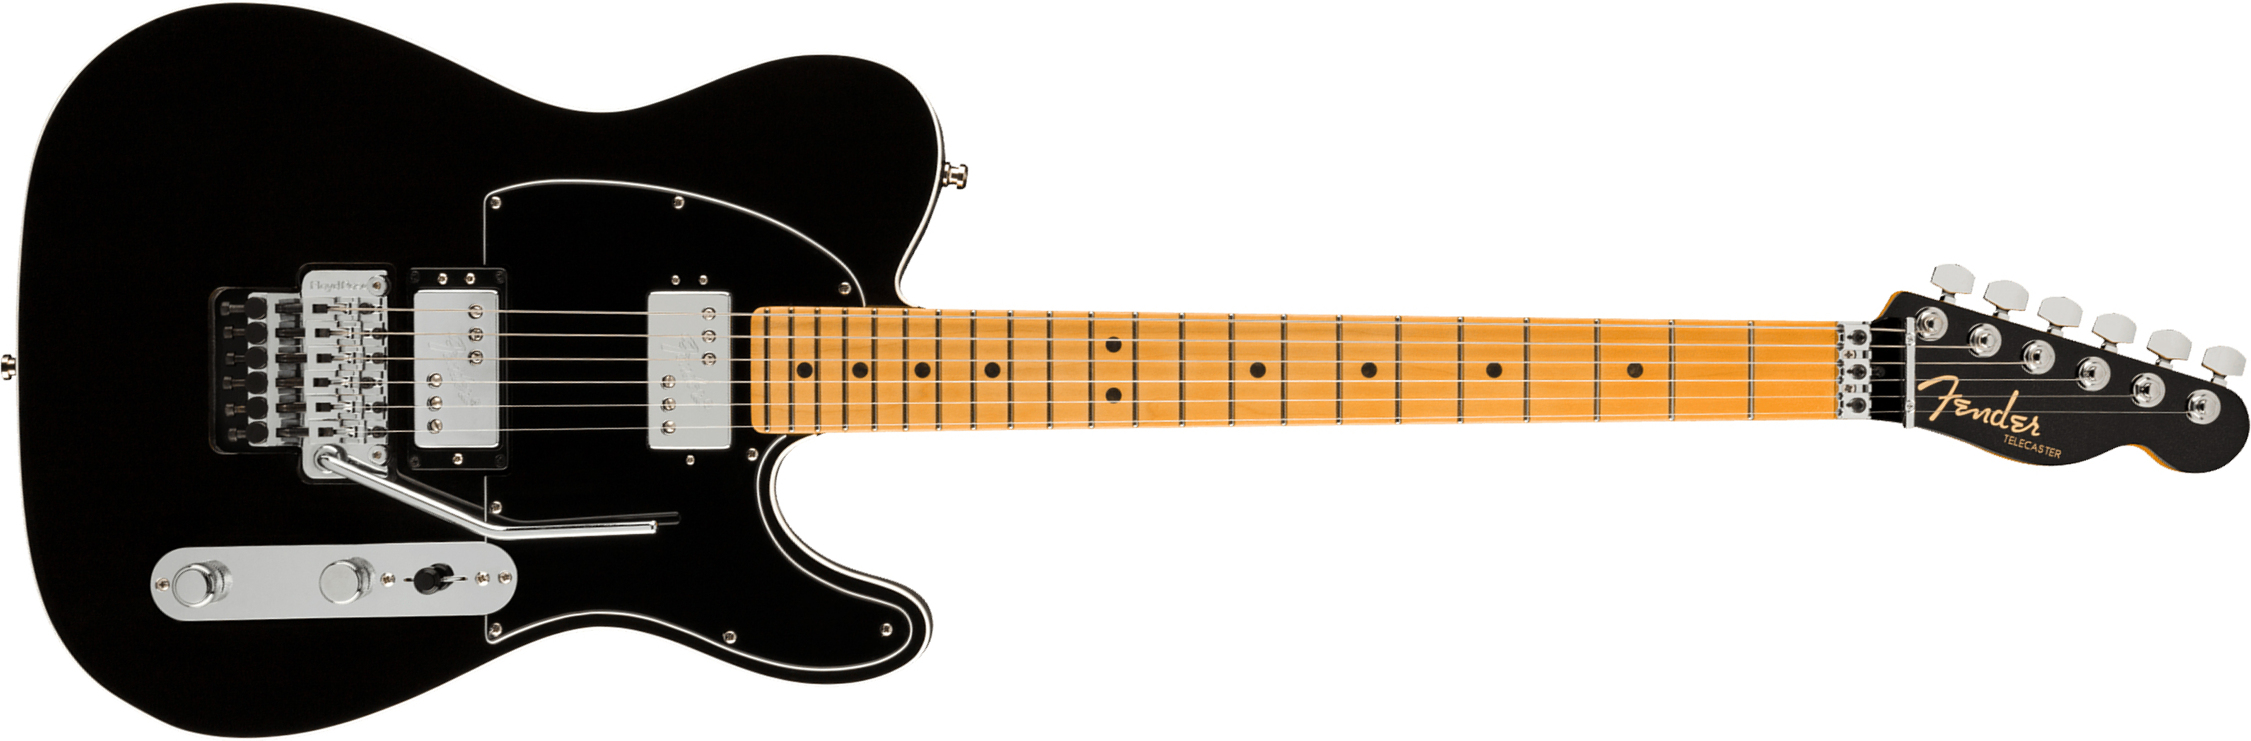 Fender Tele American Ultra Luxe Hh Floyd Rose Usa Fr Mn +etui - Mystic Black - Guitarra eléctrica con forma de tel - Main picture